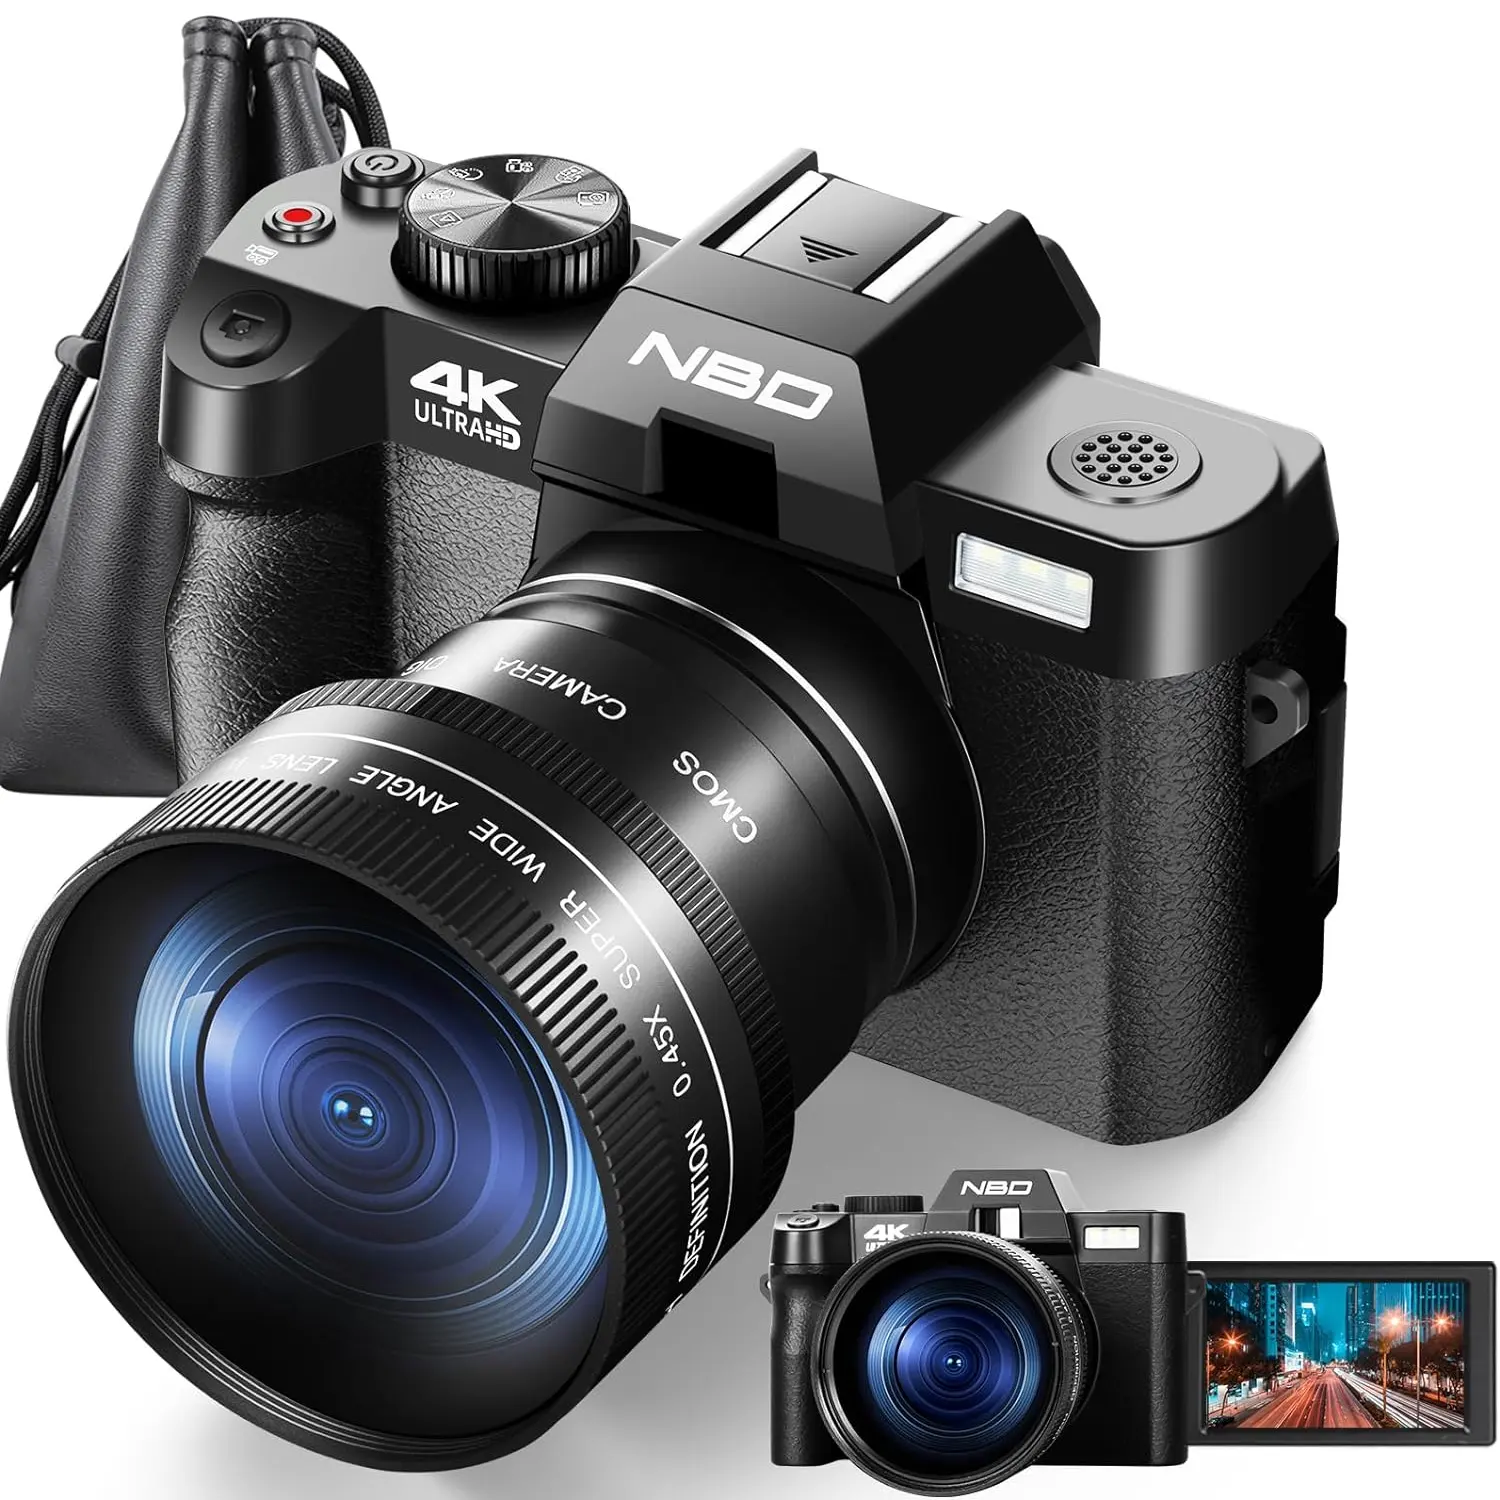 NBD kamera Digital perekam Video 4K, kamera perekam Digital layar 3 inci baterai isi ulang 48 megapiksel HITAM Pink putih 16x